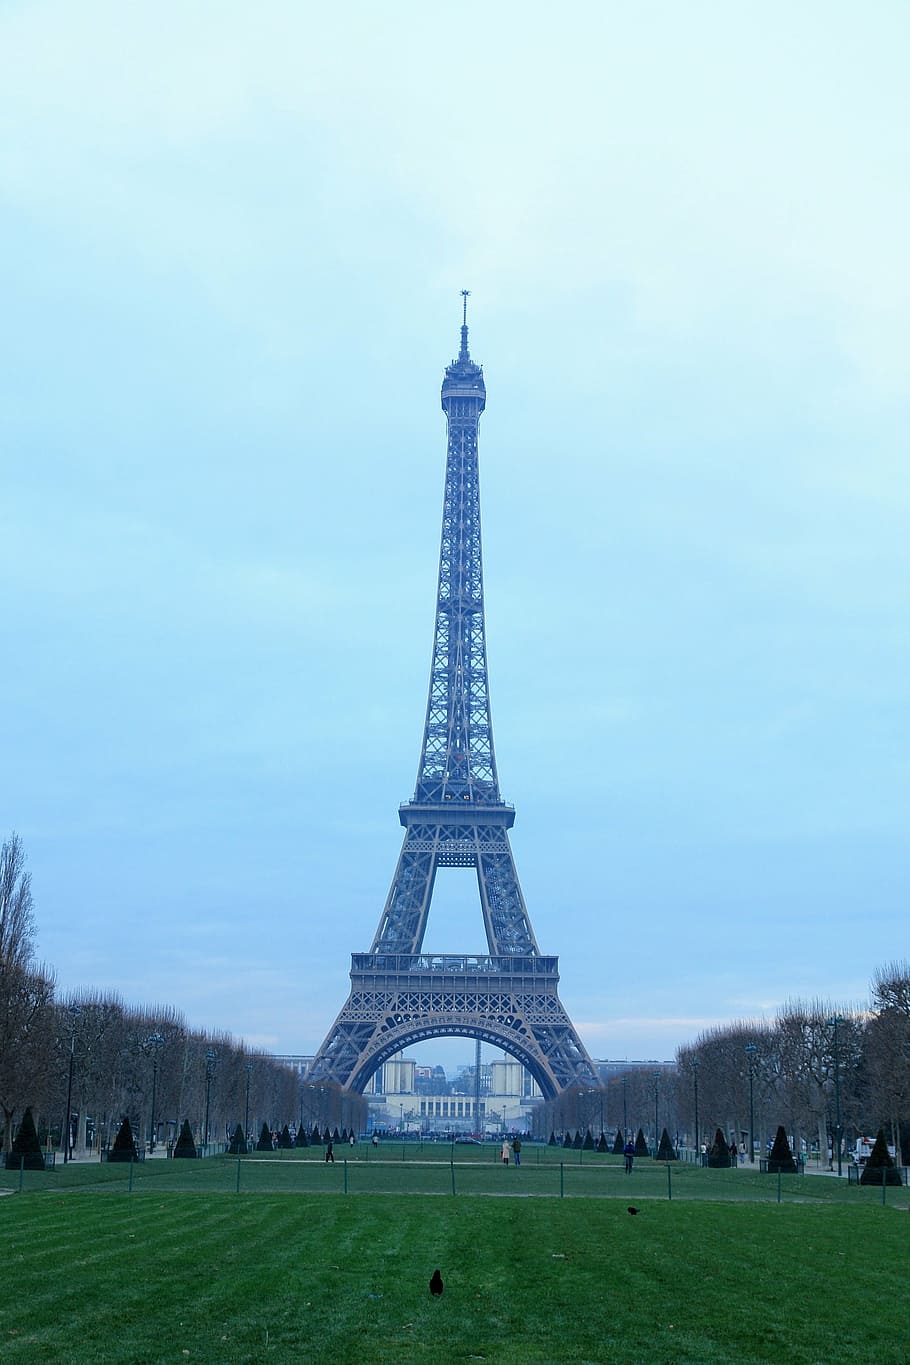 Eiffel tower at Paris, France during daytime, le tour eiffel